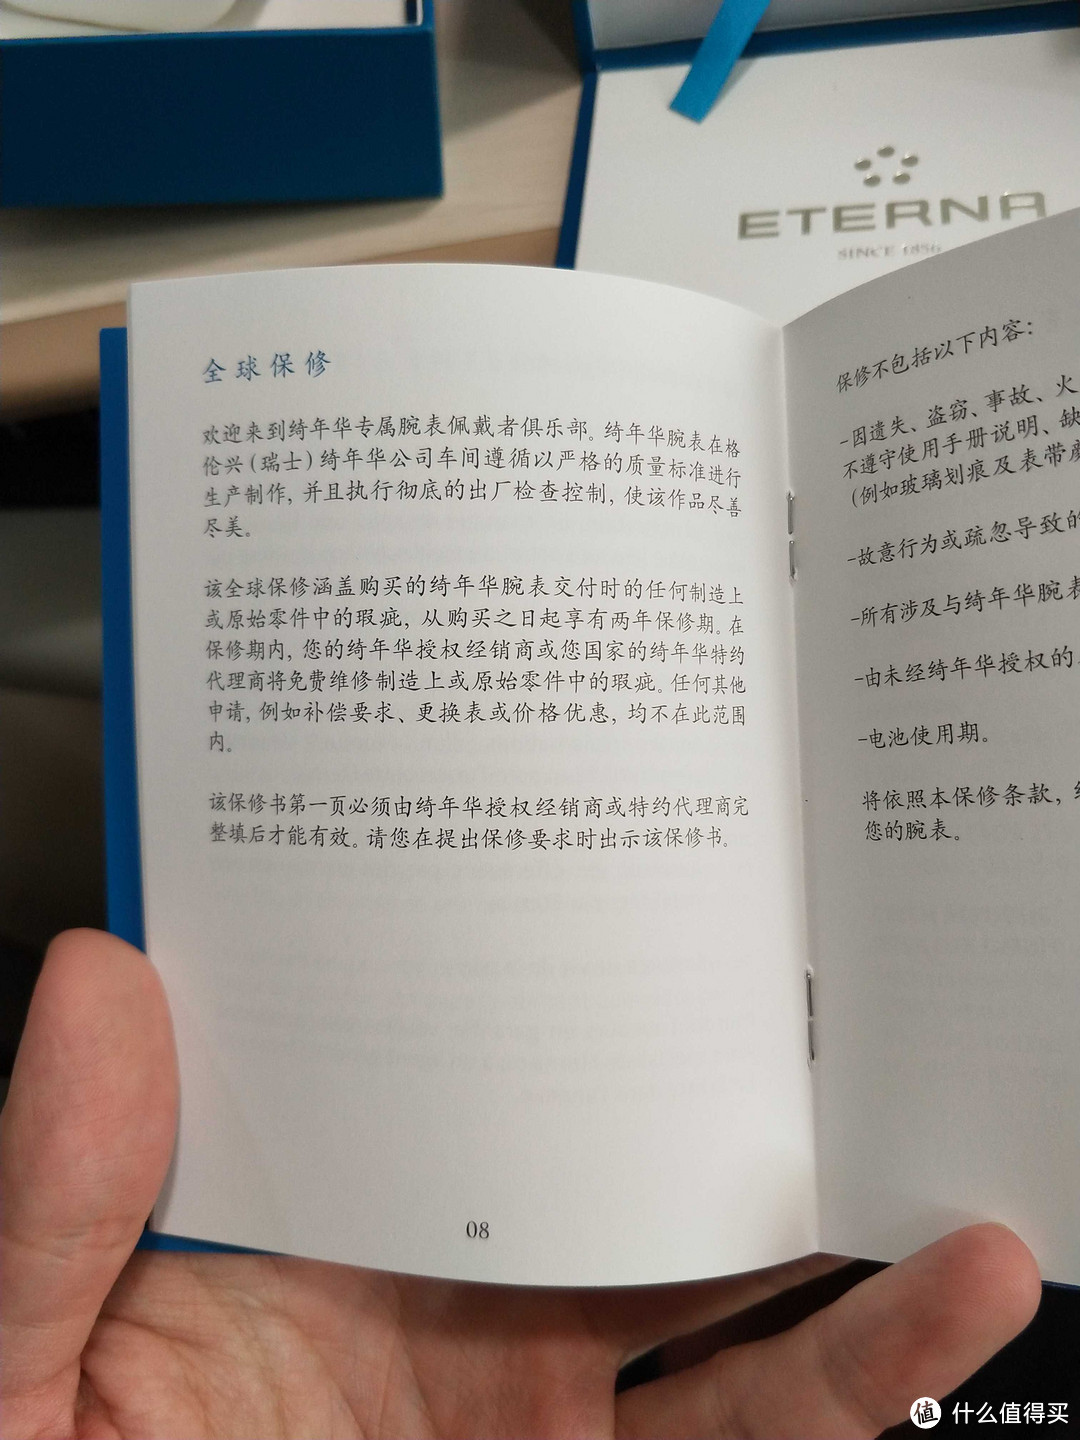 说明书有中文，嗯 挺不错的